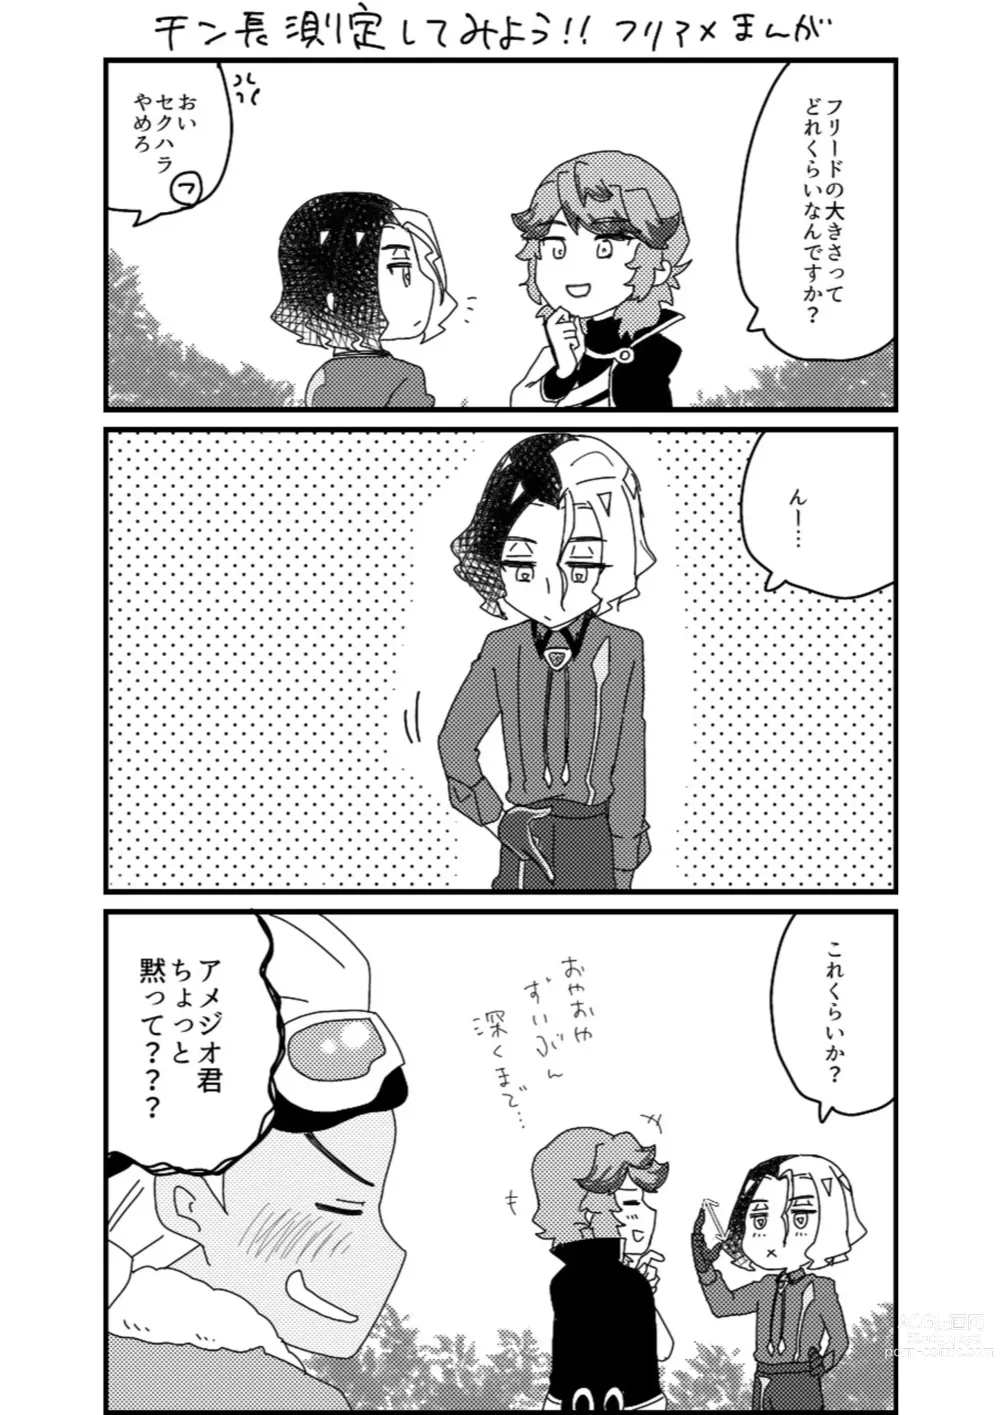 Page 15 of doujinshi Furiame Hanashi 2